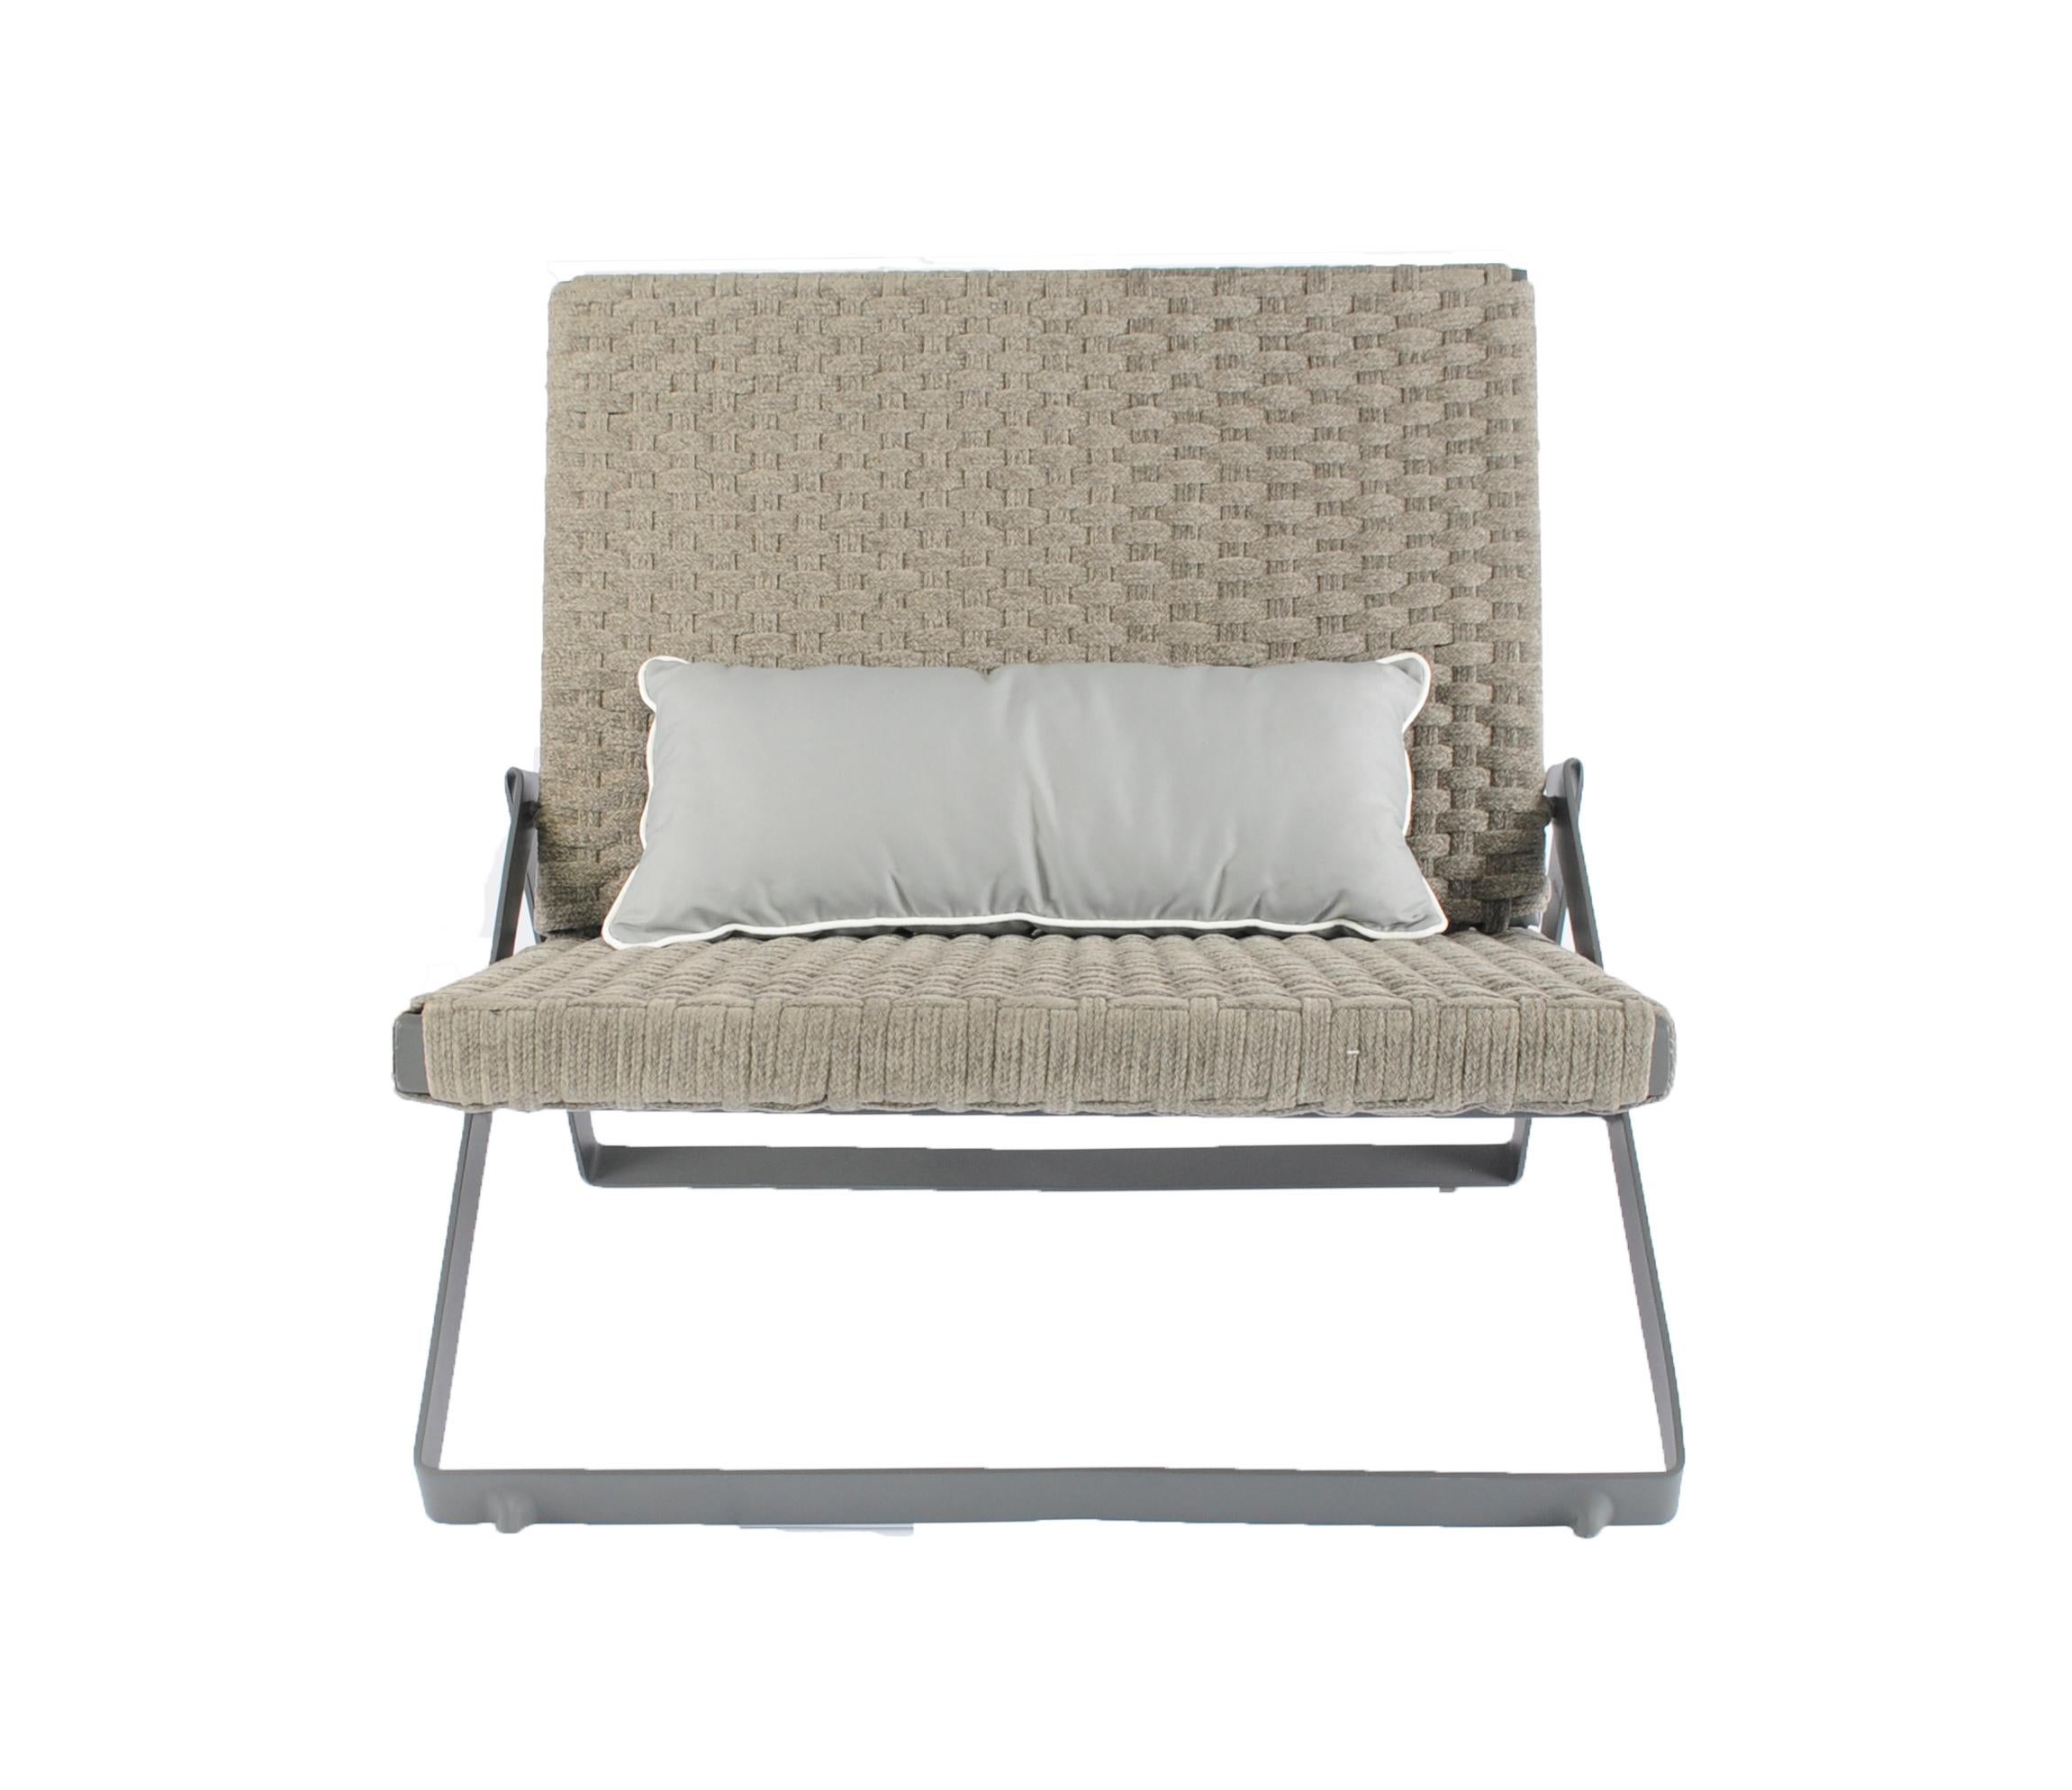 La chaise longue d'extérieur Dobra fait partie de la ligne de mobilier Dobra qui est conçue avec le concept d'une barre d'acier continue pliée pour créer des pieds et des cadres pour les différents composants.
